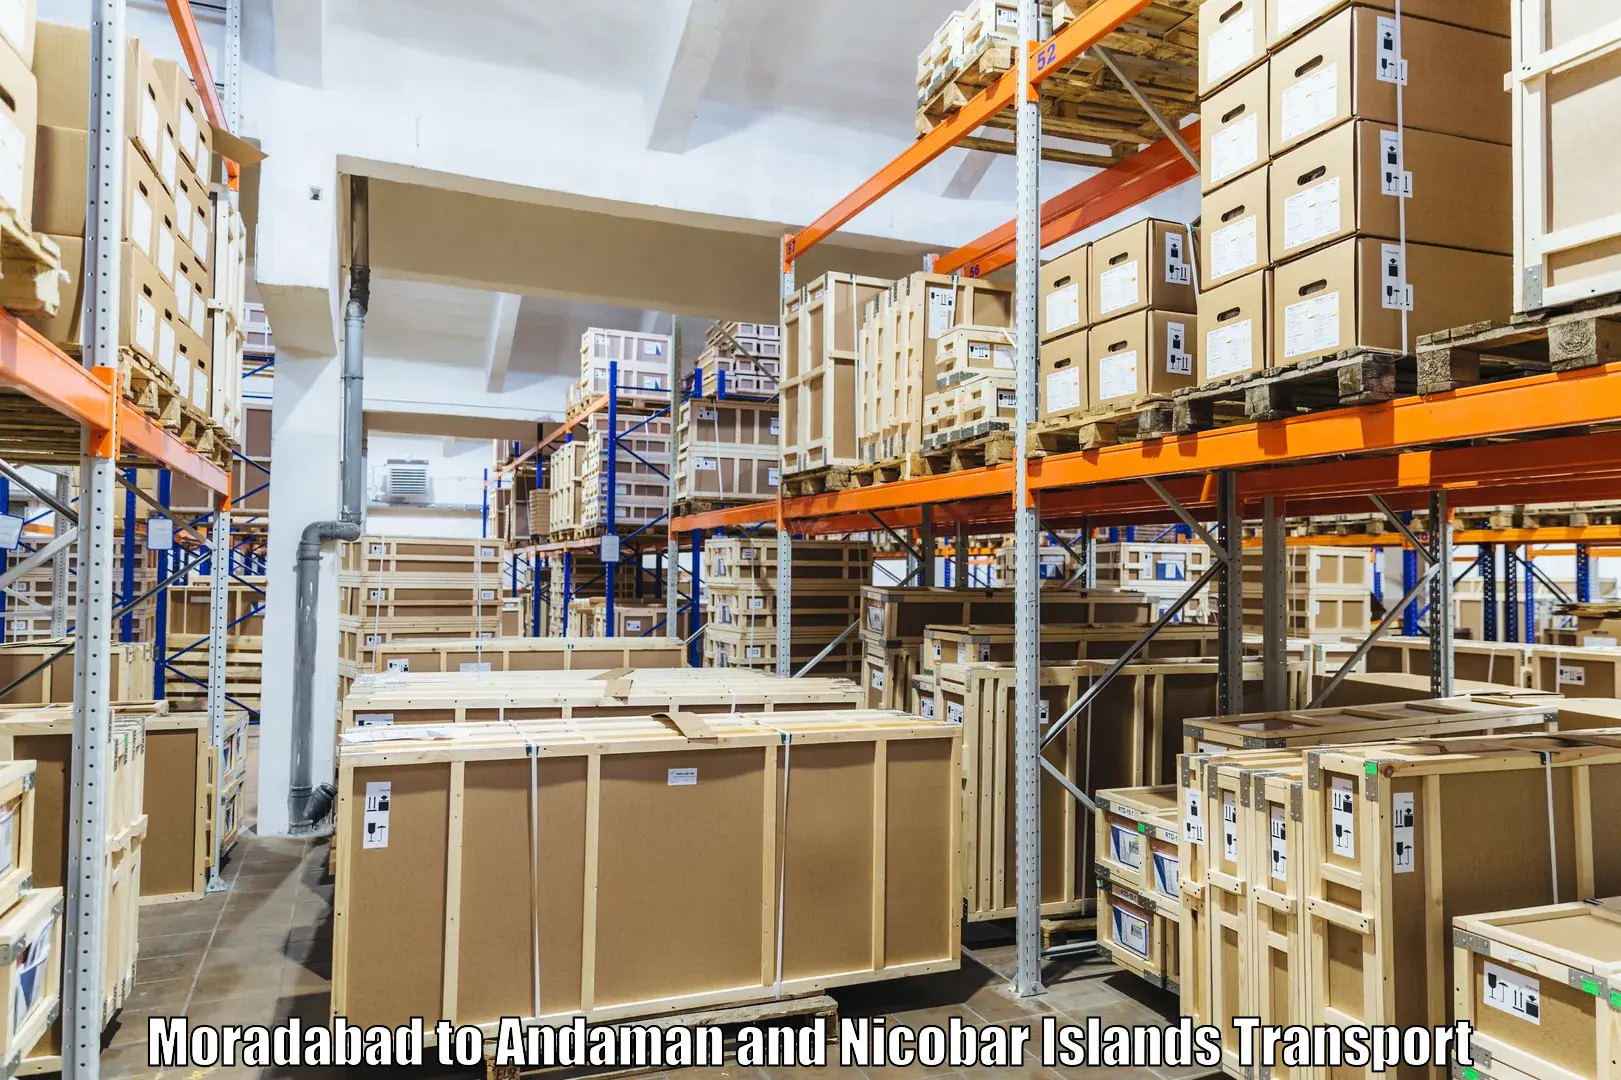 Shipping partner Moradabad to Andaman and Nicobar Islands